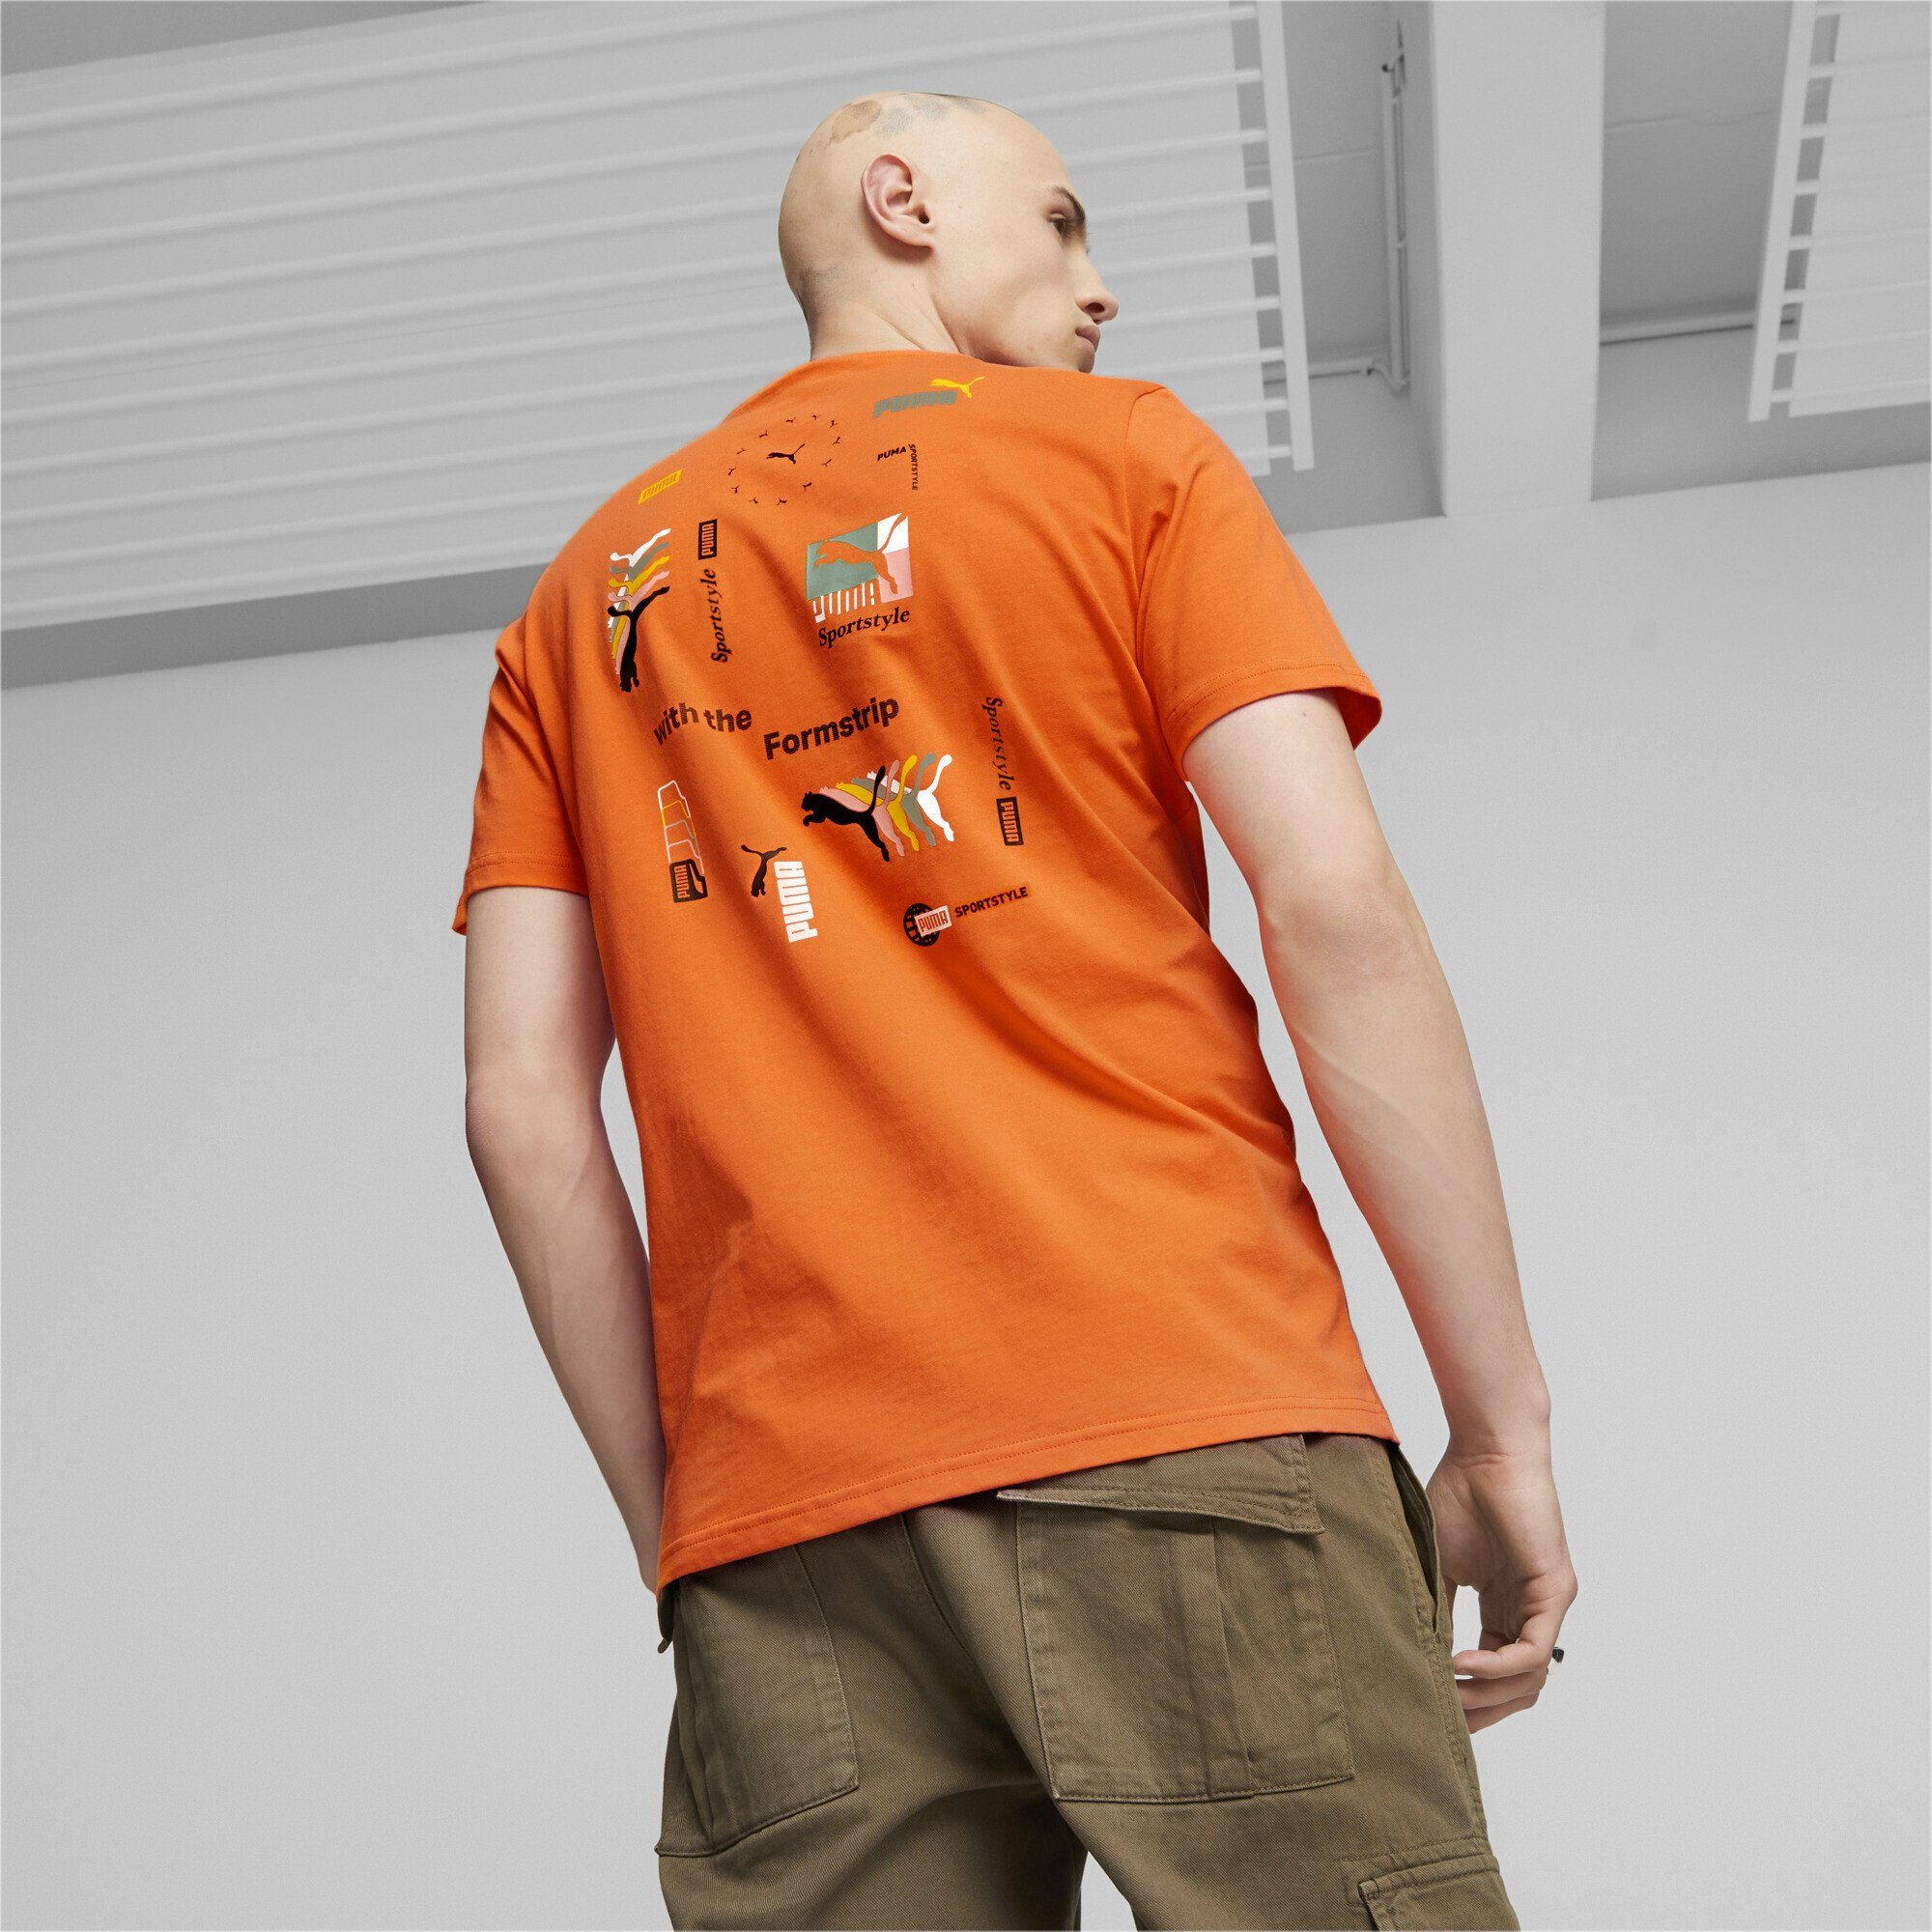 PUMA T-Shirt Classics Orange T-Shirt Love Heat Brand Hot Herren